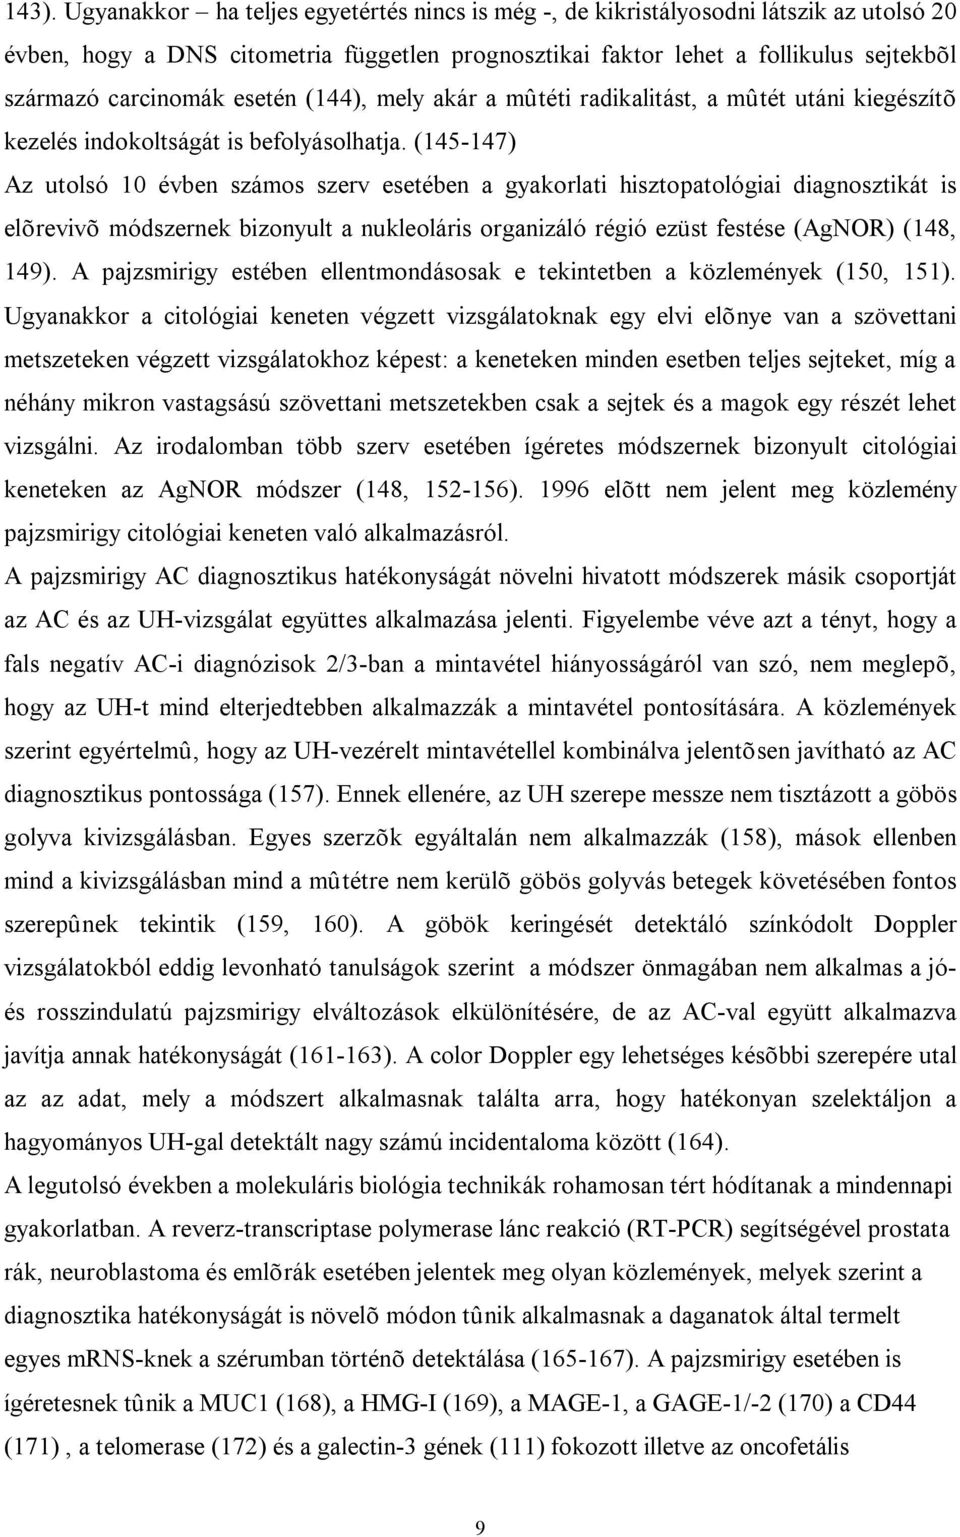 (145-147) Az utolsó 10 évben számos szerv esetében a gyakorlati hisztopatológiai diagnosztikát is elõrevivõ módszernek bizonyult a nukleoláris organizáló régió ezüst festése (AgNOR) (148, 149).